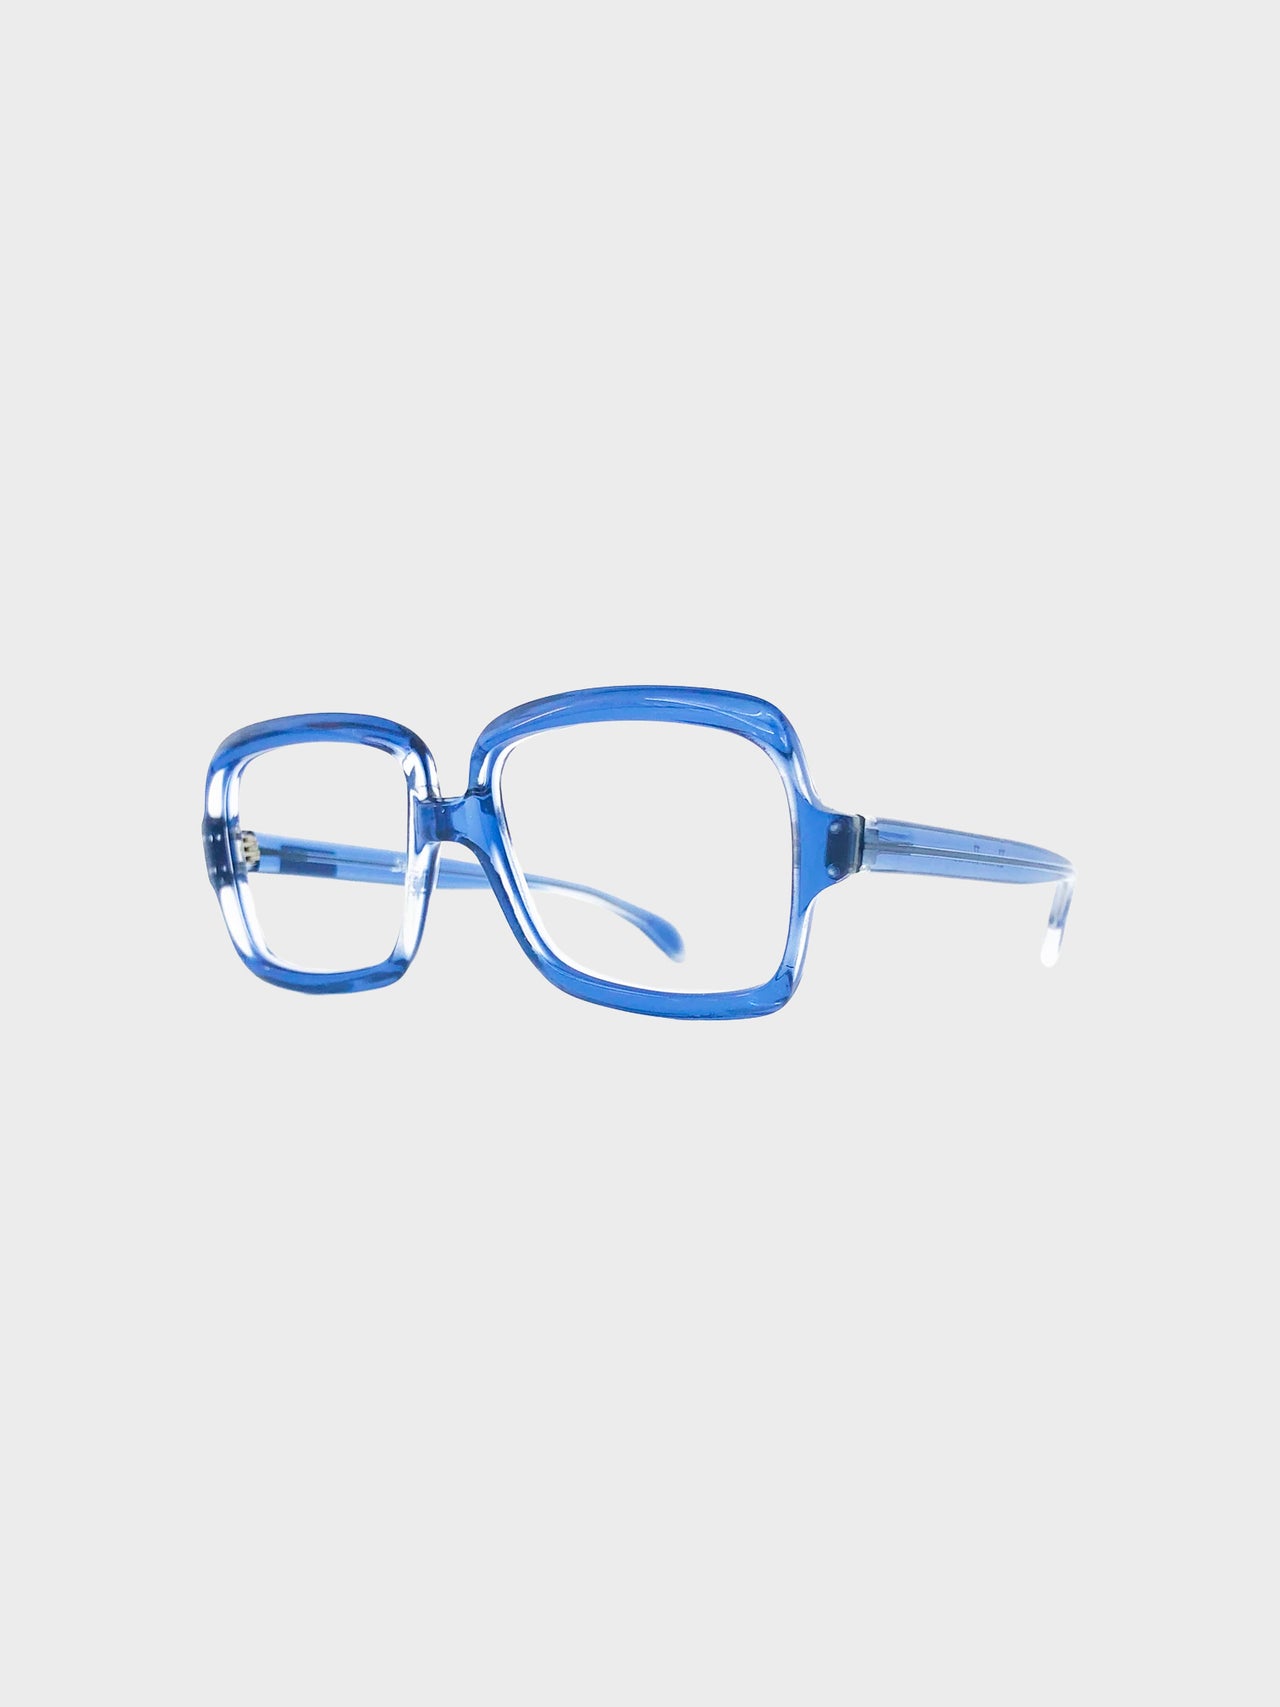 FRENCH VINTAGE / Clear glasses (BLUE) #FV02